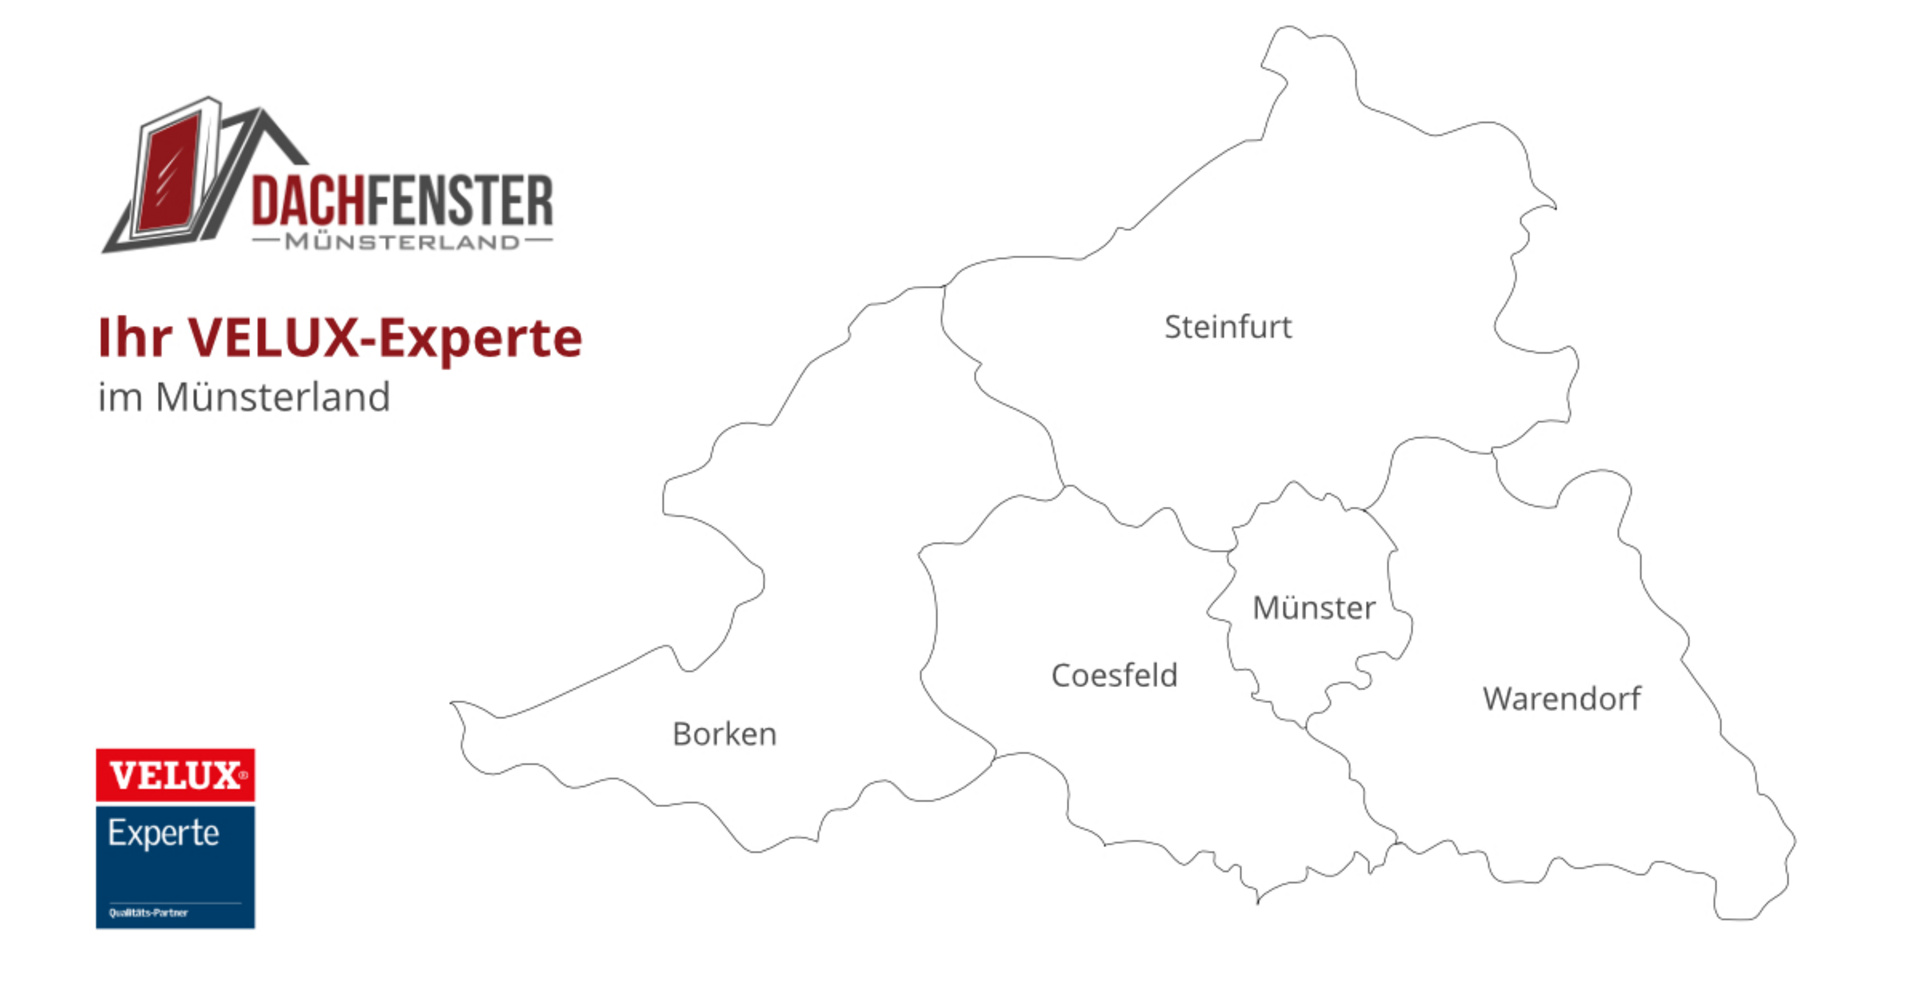 Dachfenster Münsterland: Ihr regionaler Velux-Experte im Münsterland